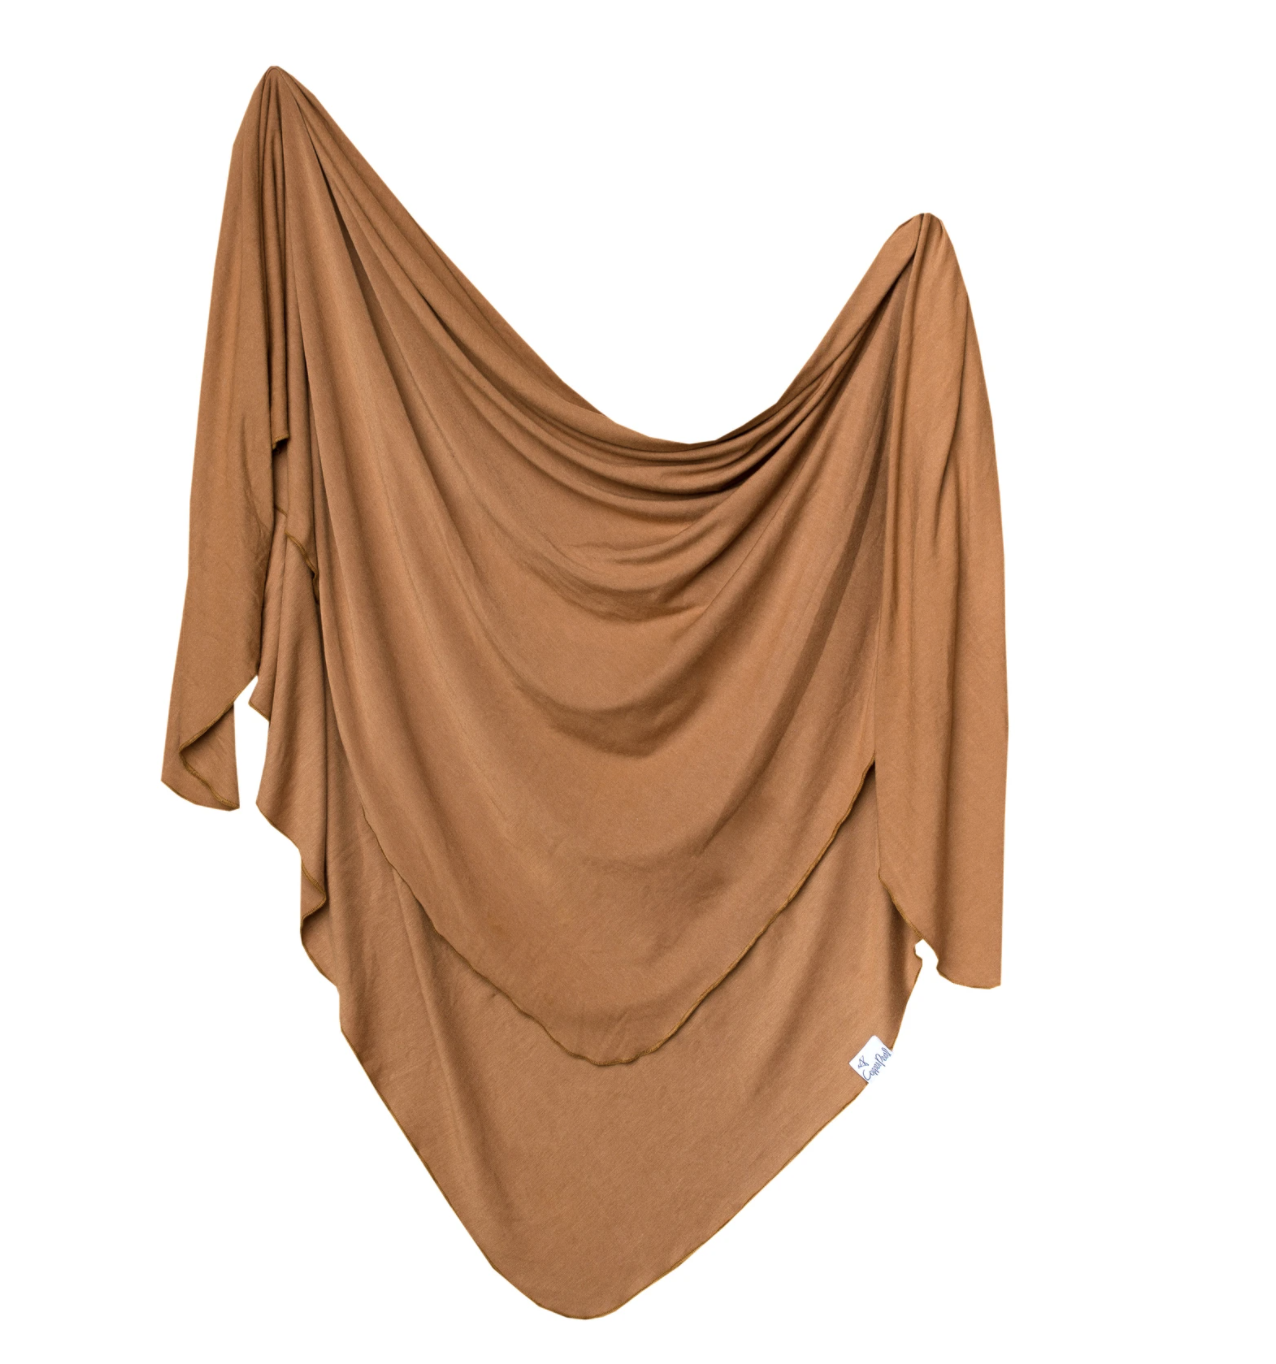 Copper Pearl Camel Knit Blanket Single